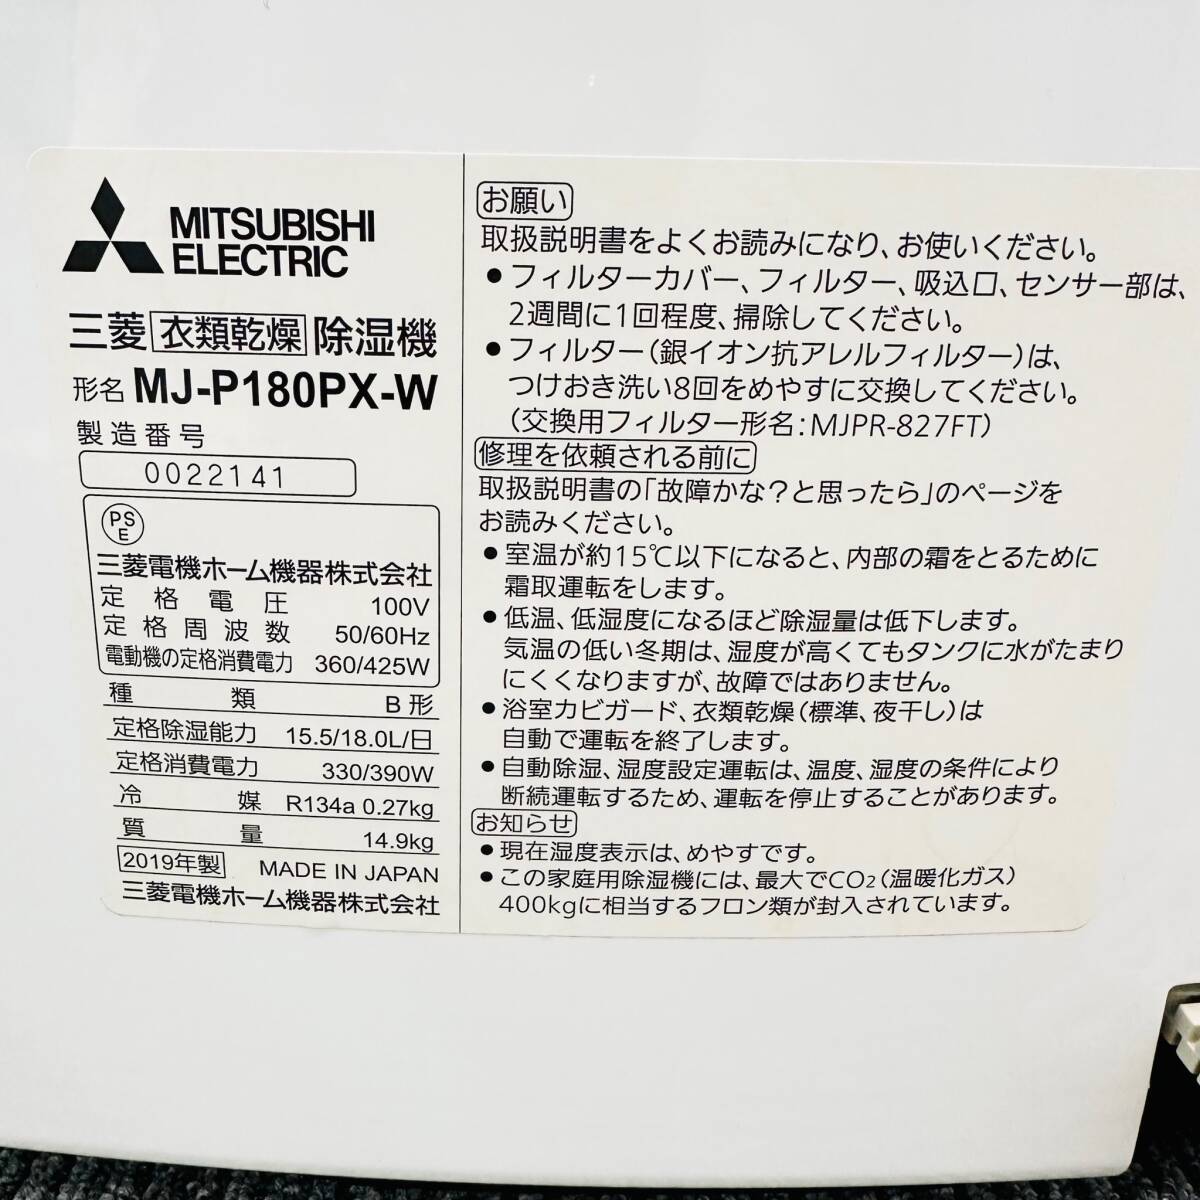 MITSUBISHI Mitsubishi одежда сухой осушитель MJ-P180RX-W белый электризация проверка 0 масса примерно 14Kg 2019 год производства б/у товар салон высушенный удобный сезон дождей стирка предмет плесень меры 2410